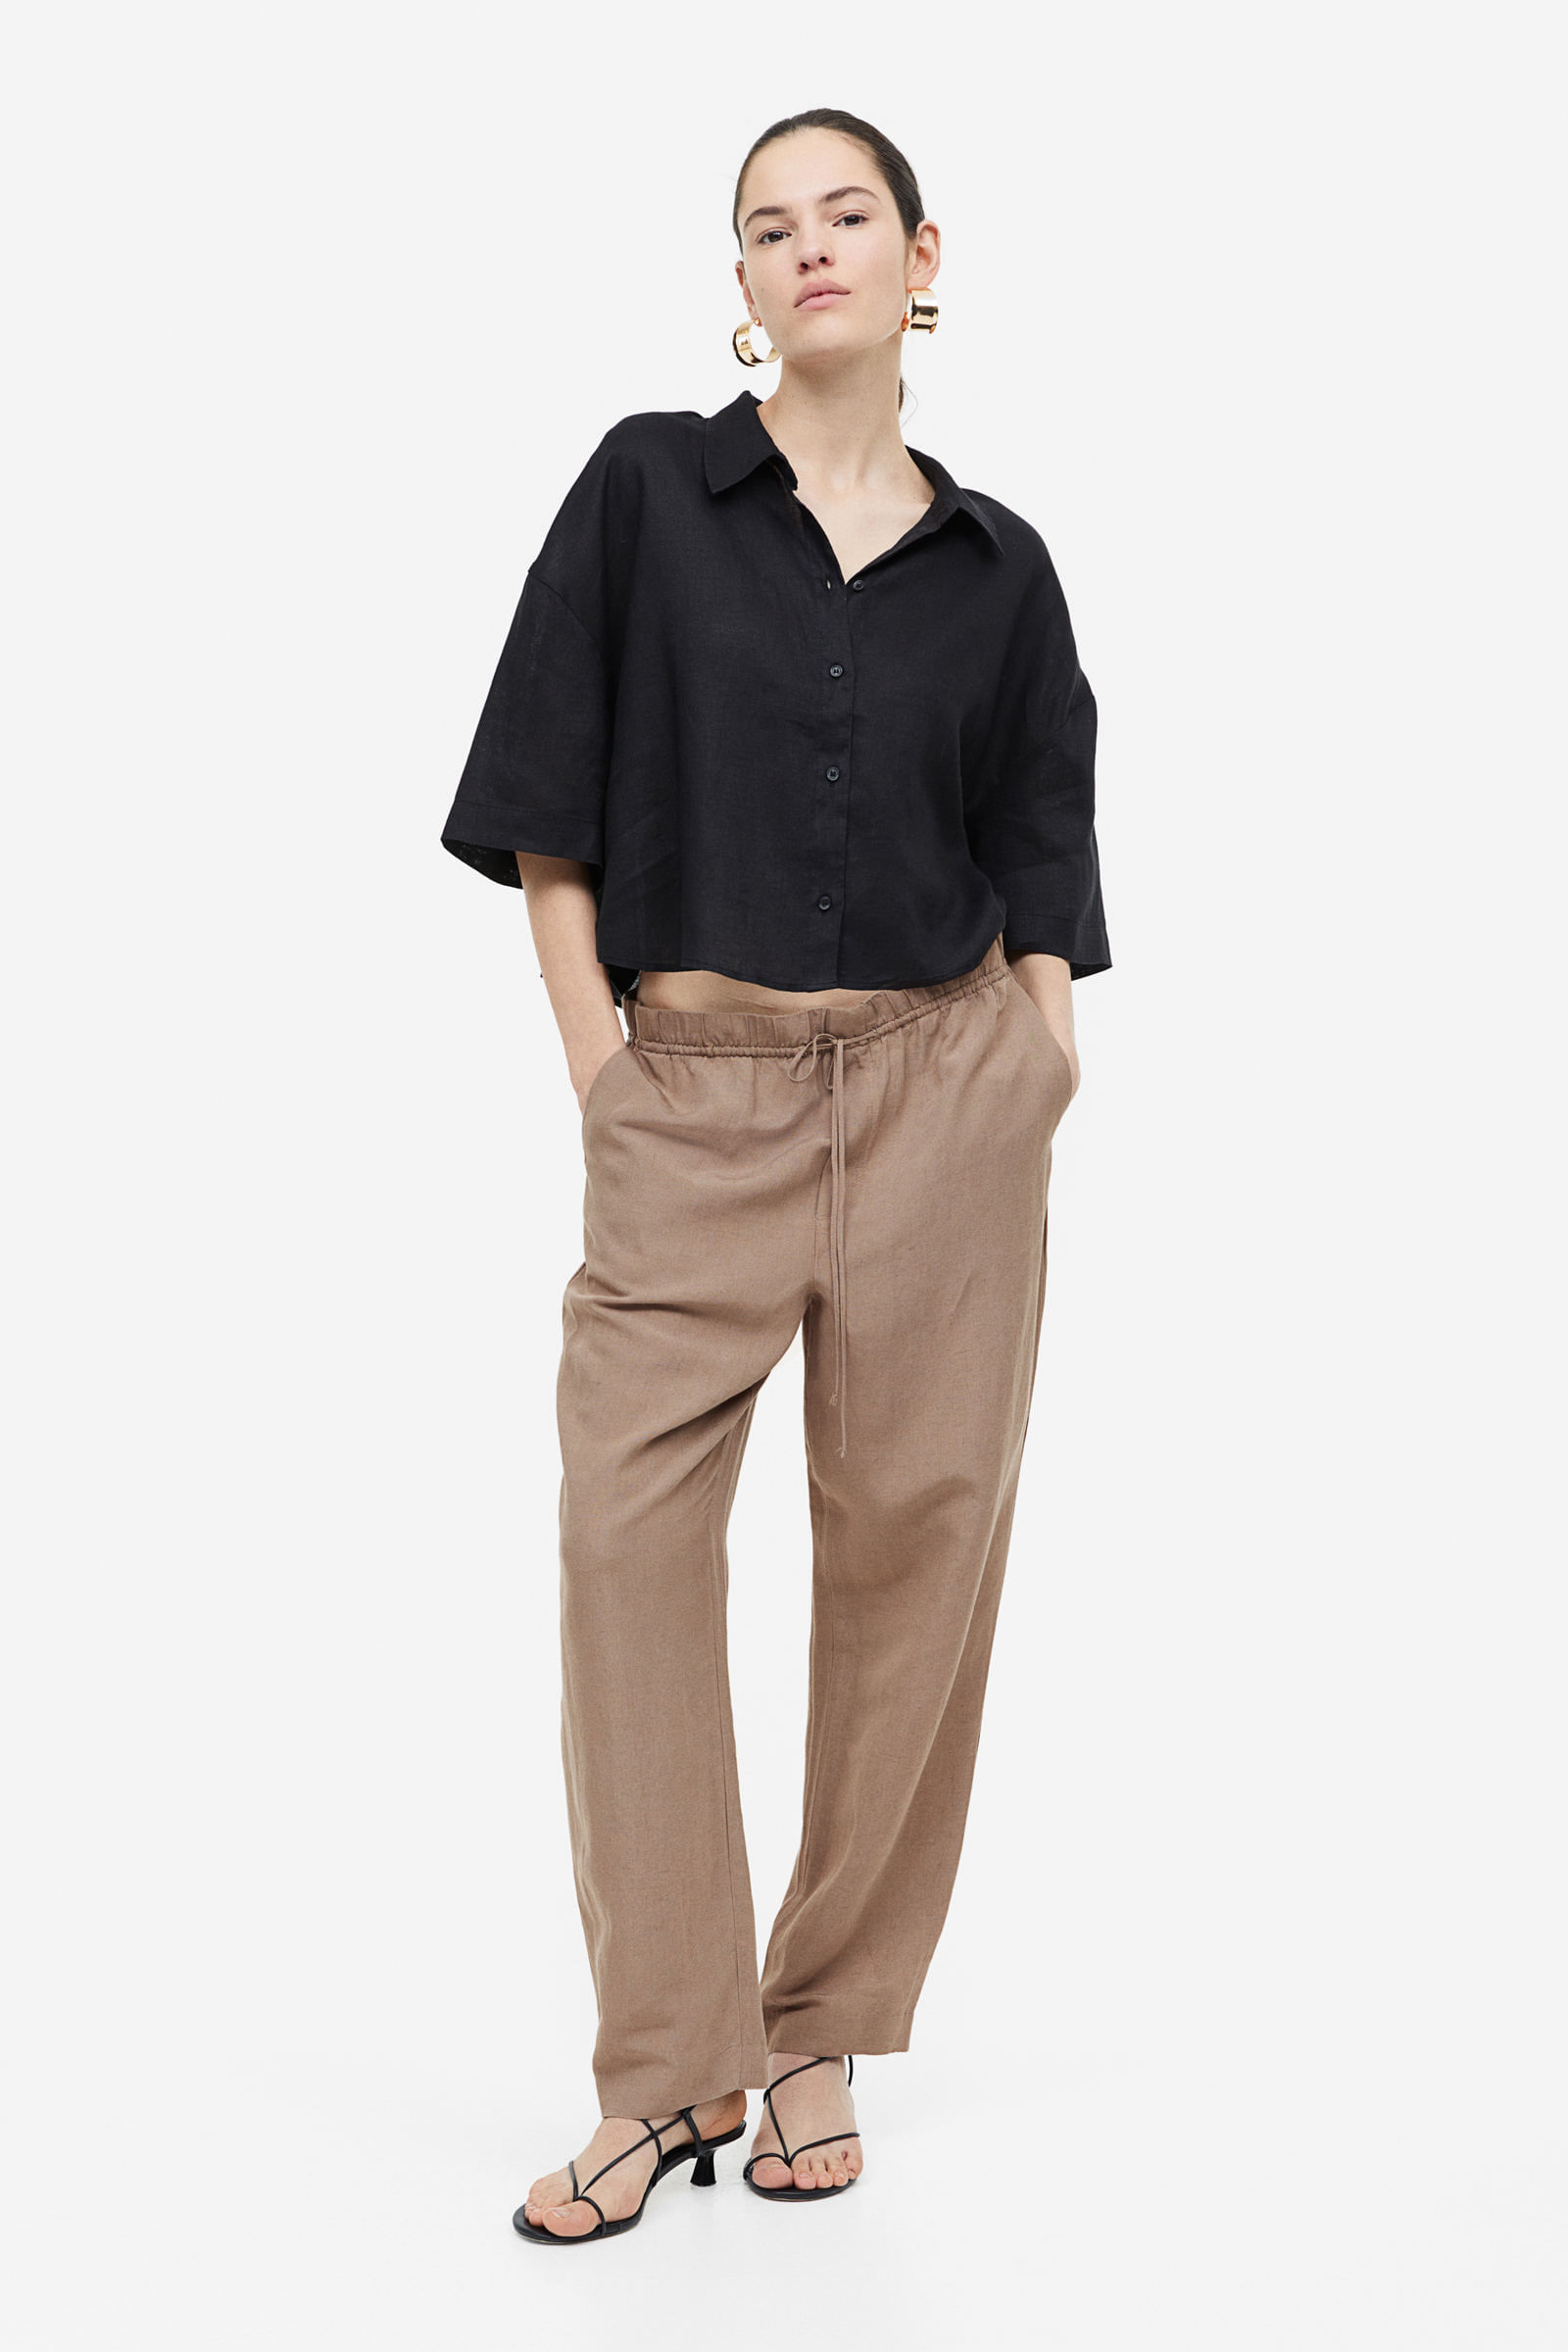 El pantalón de vestir tobillero color crema de H&M más top